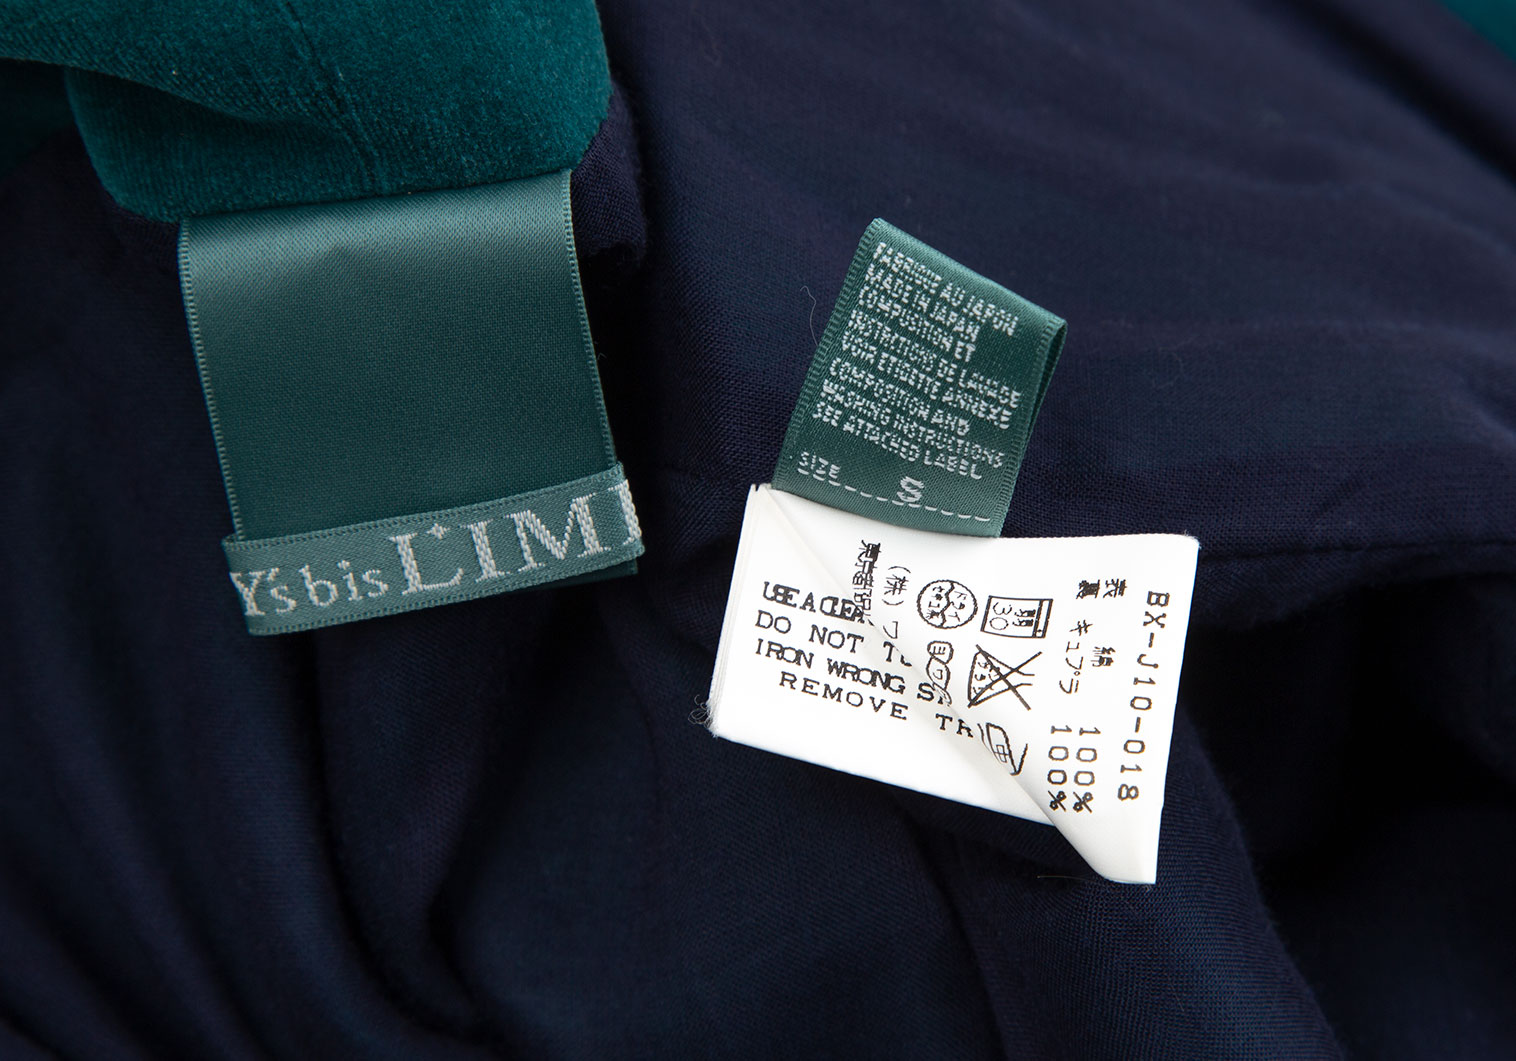 ワイズビスリミY's bis LIMI ベロアピン留めデザインジャケット